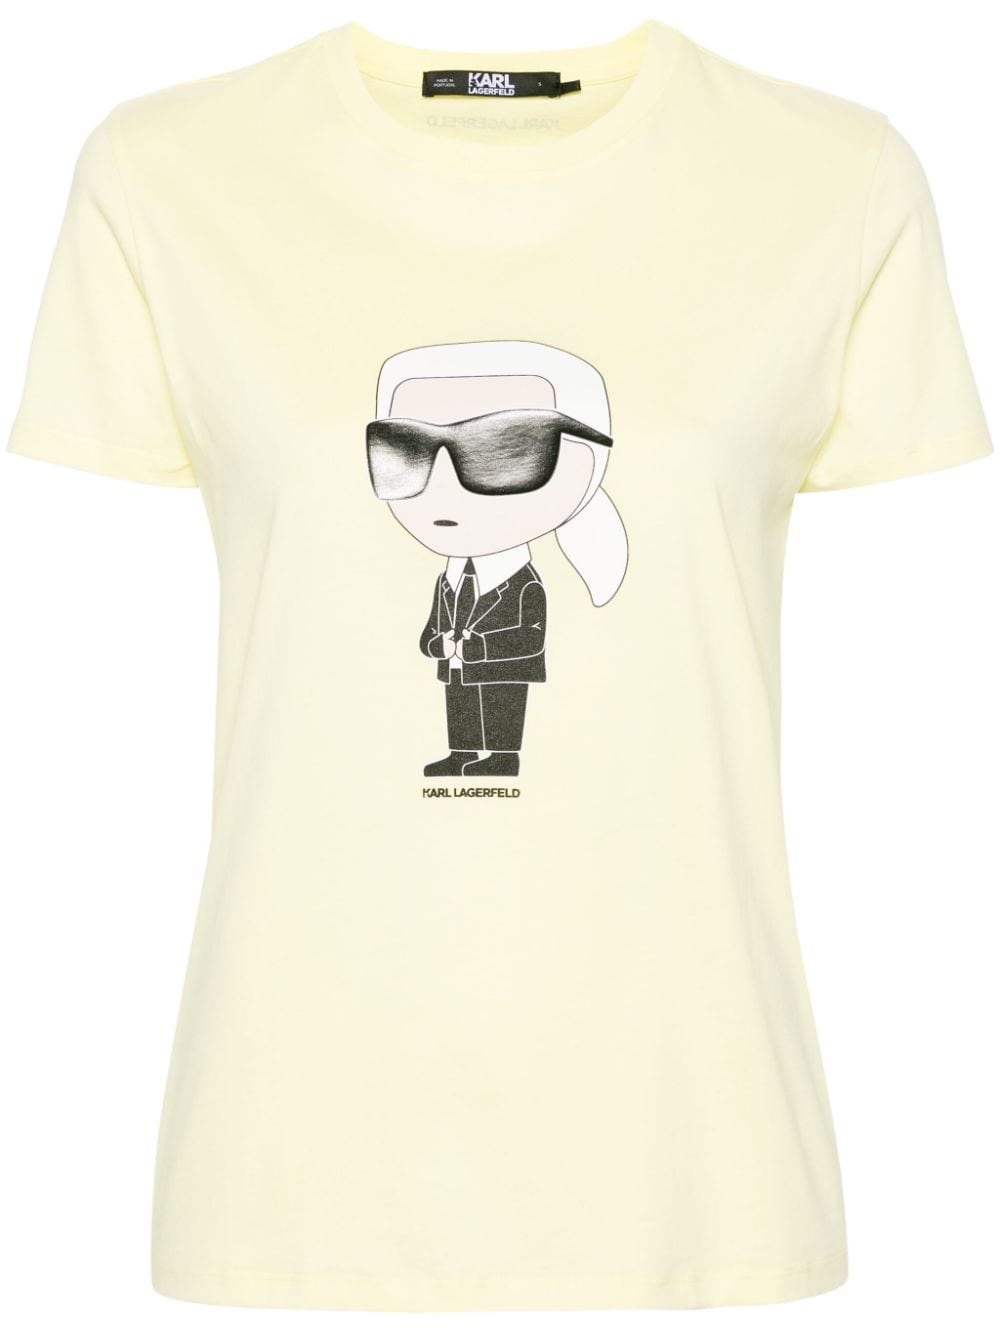 Ikonik 2.0 Karl T-shirt